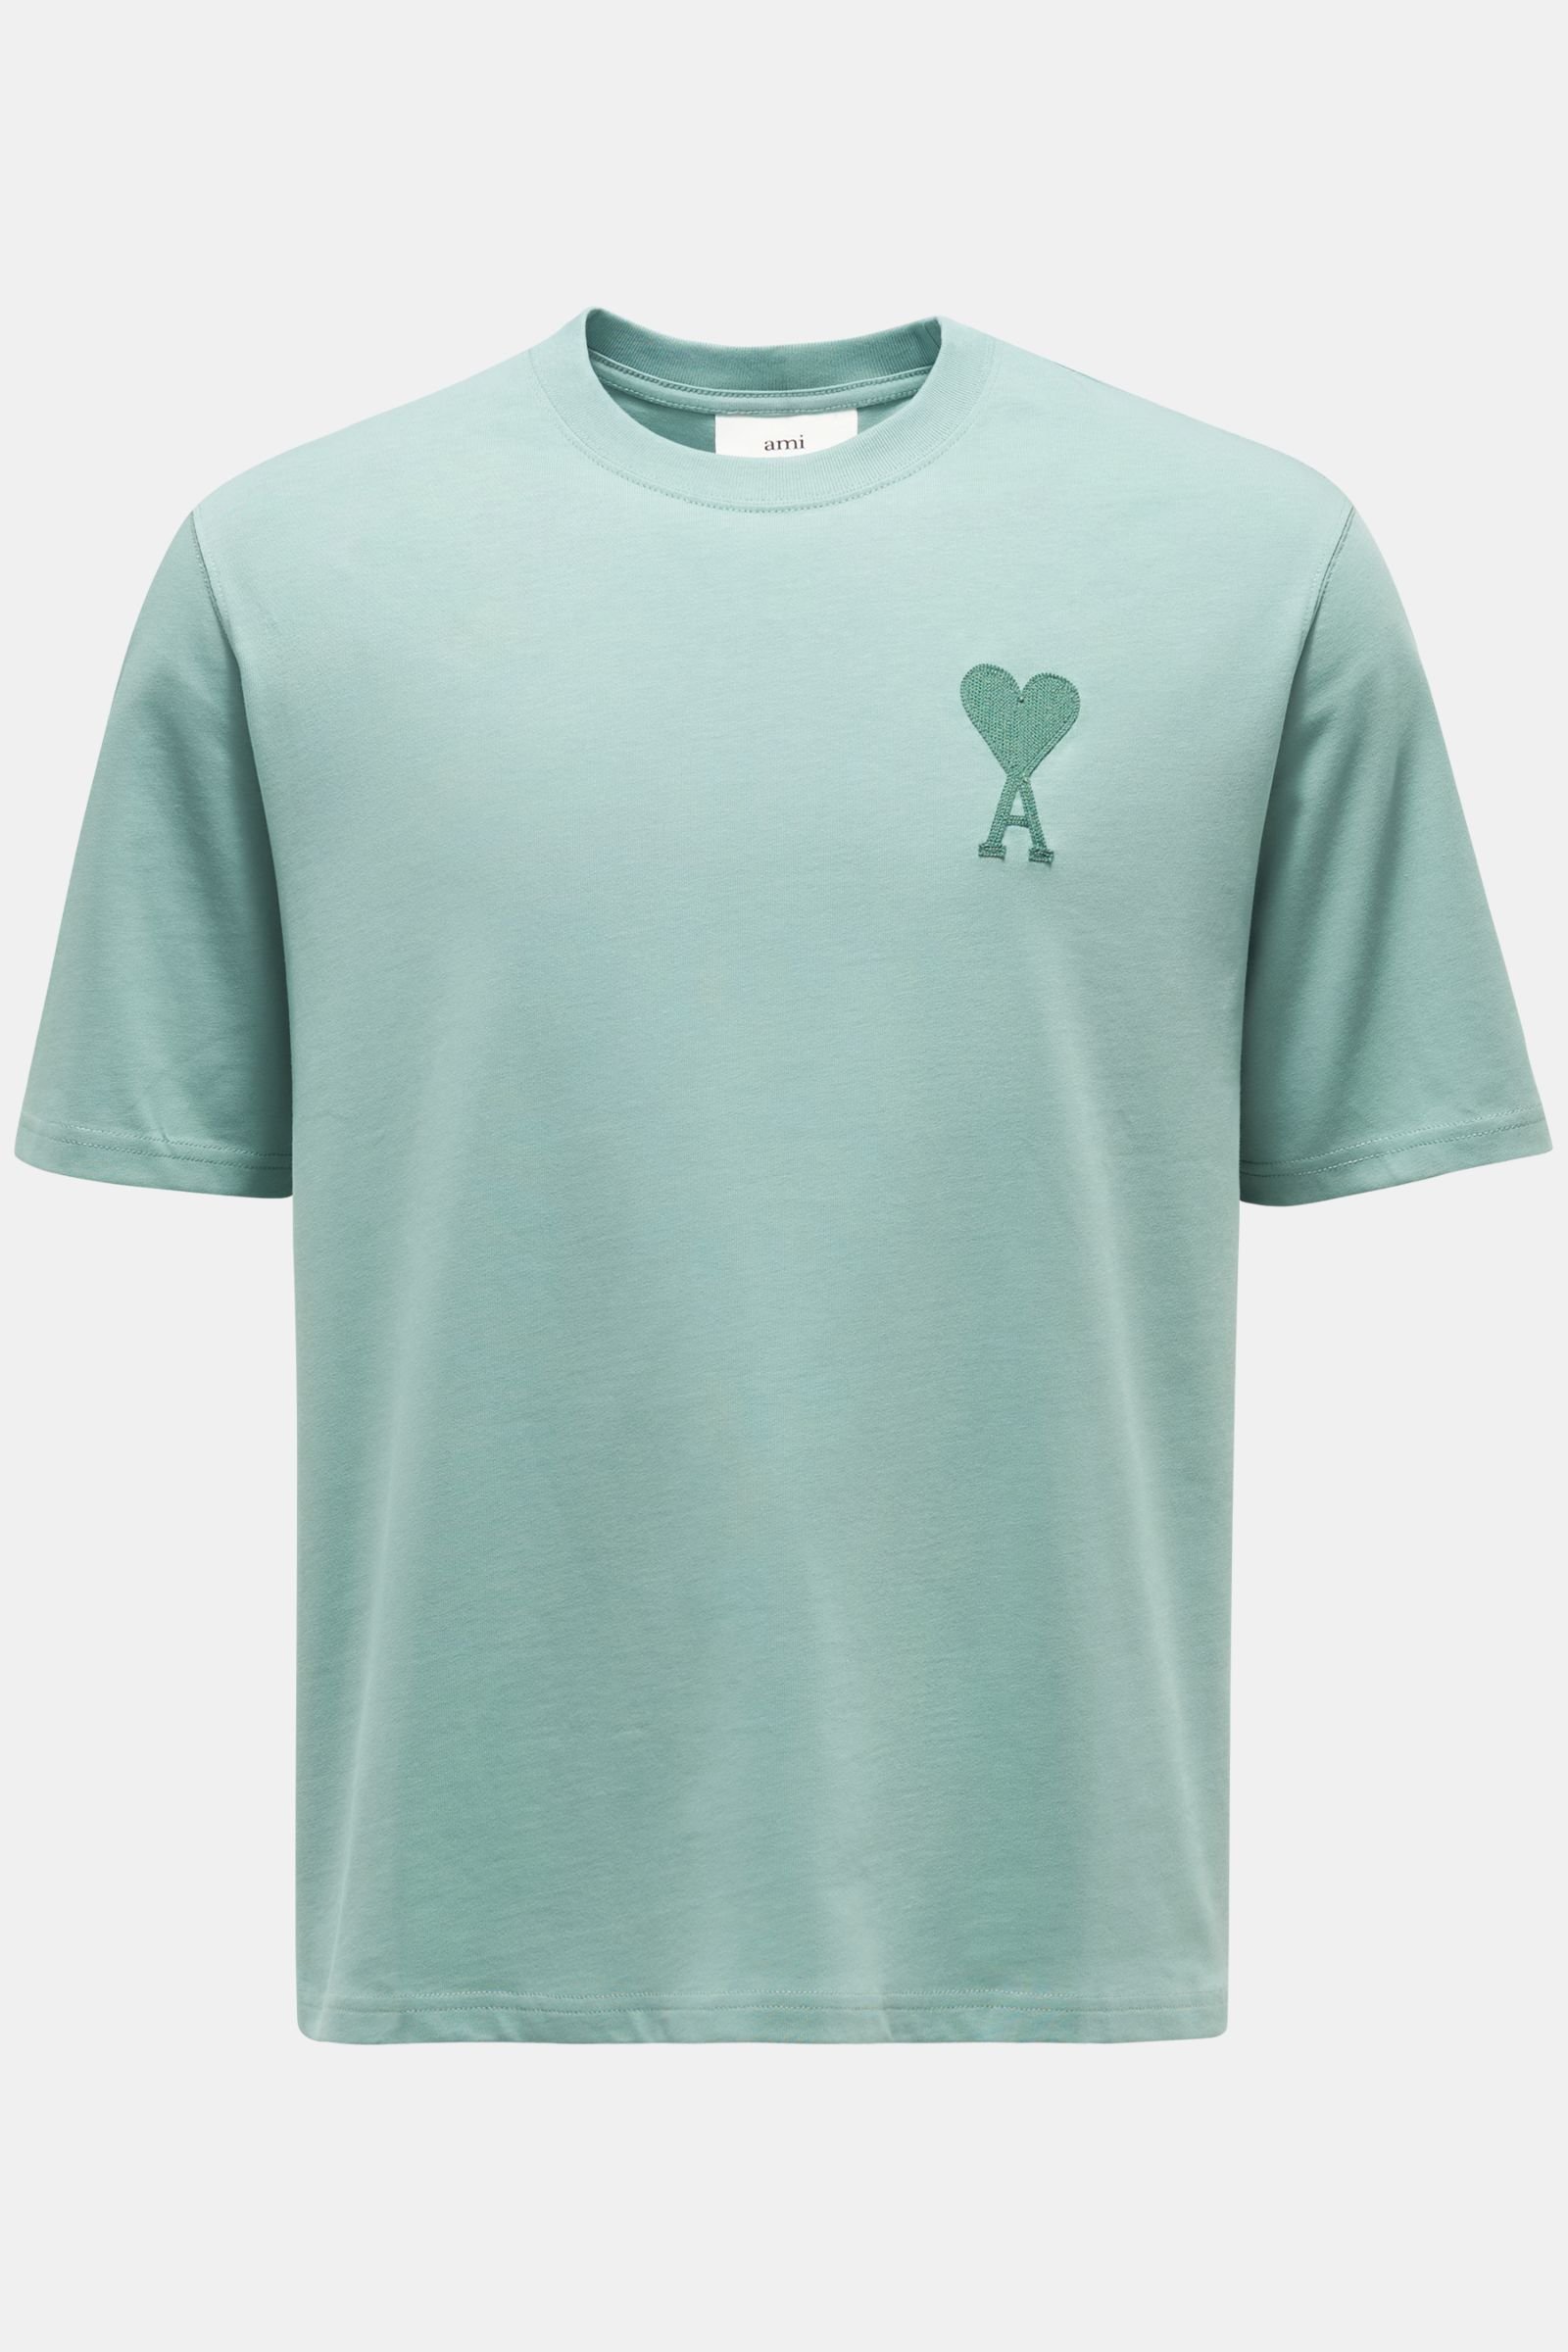 Crew neck T-shirt mint green